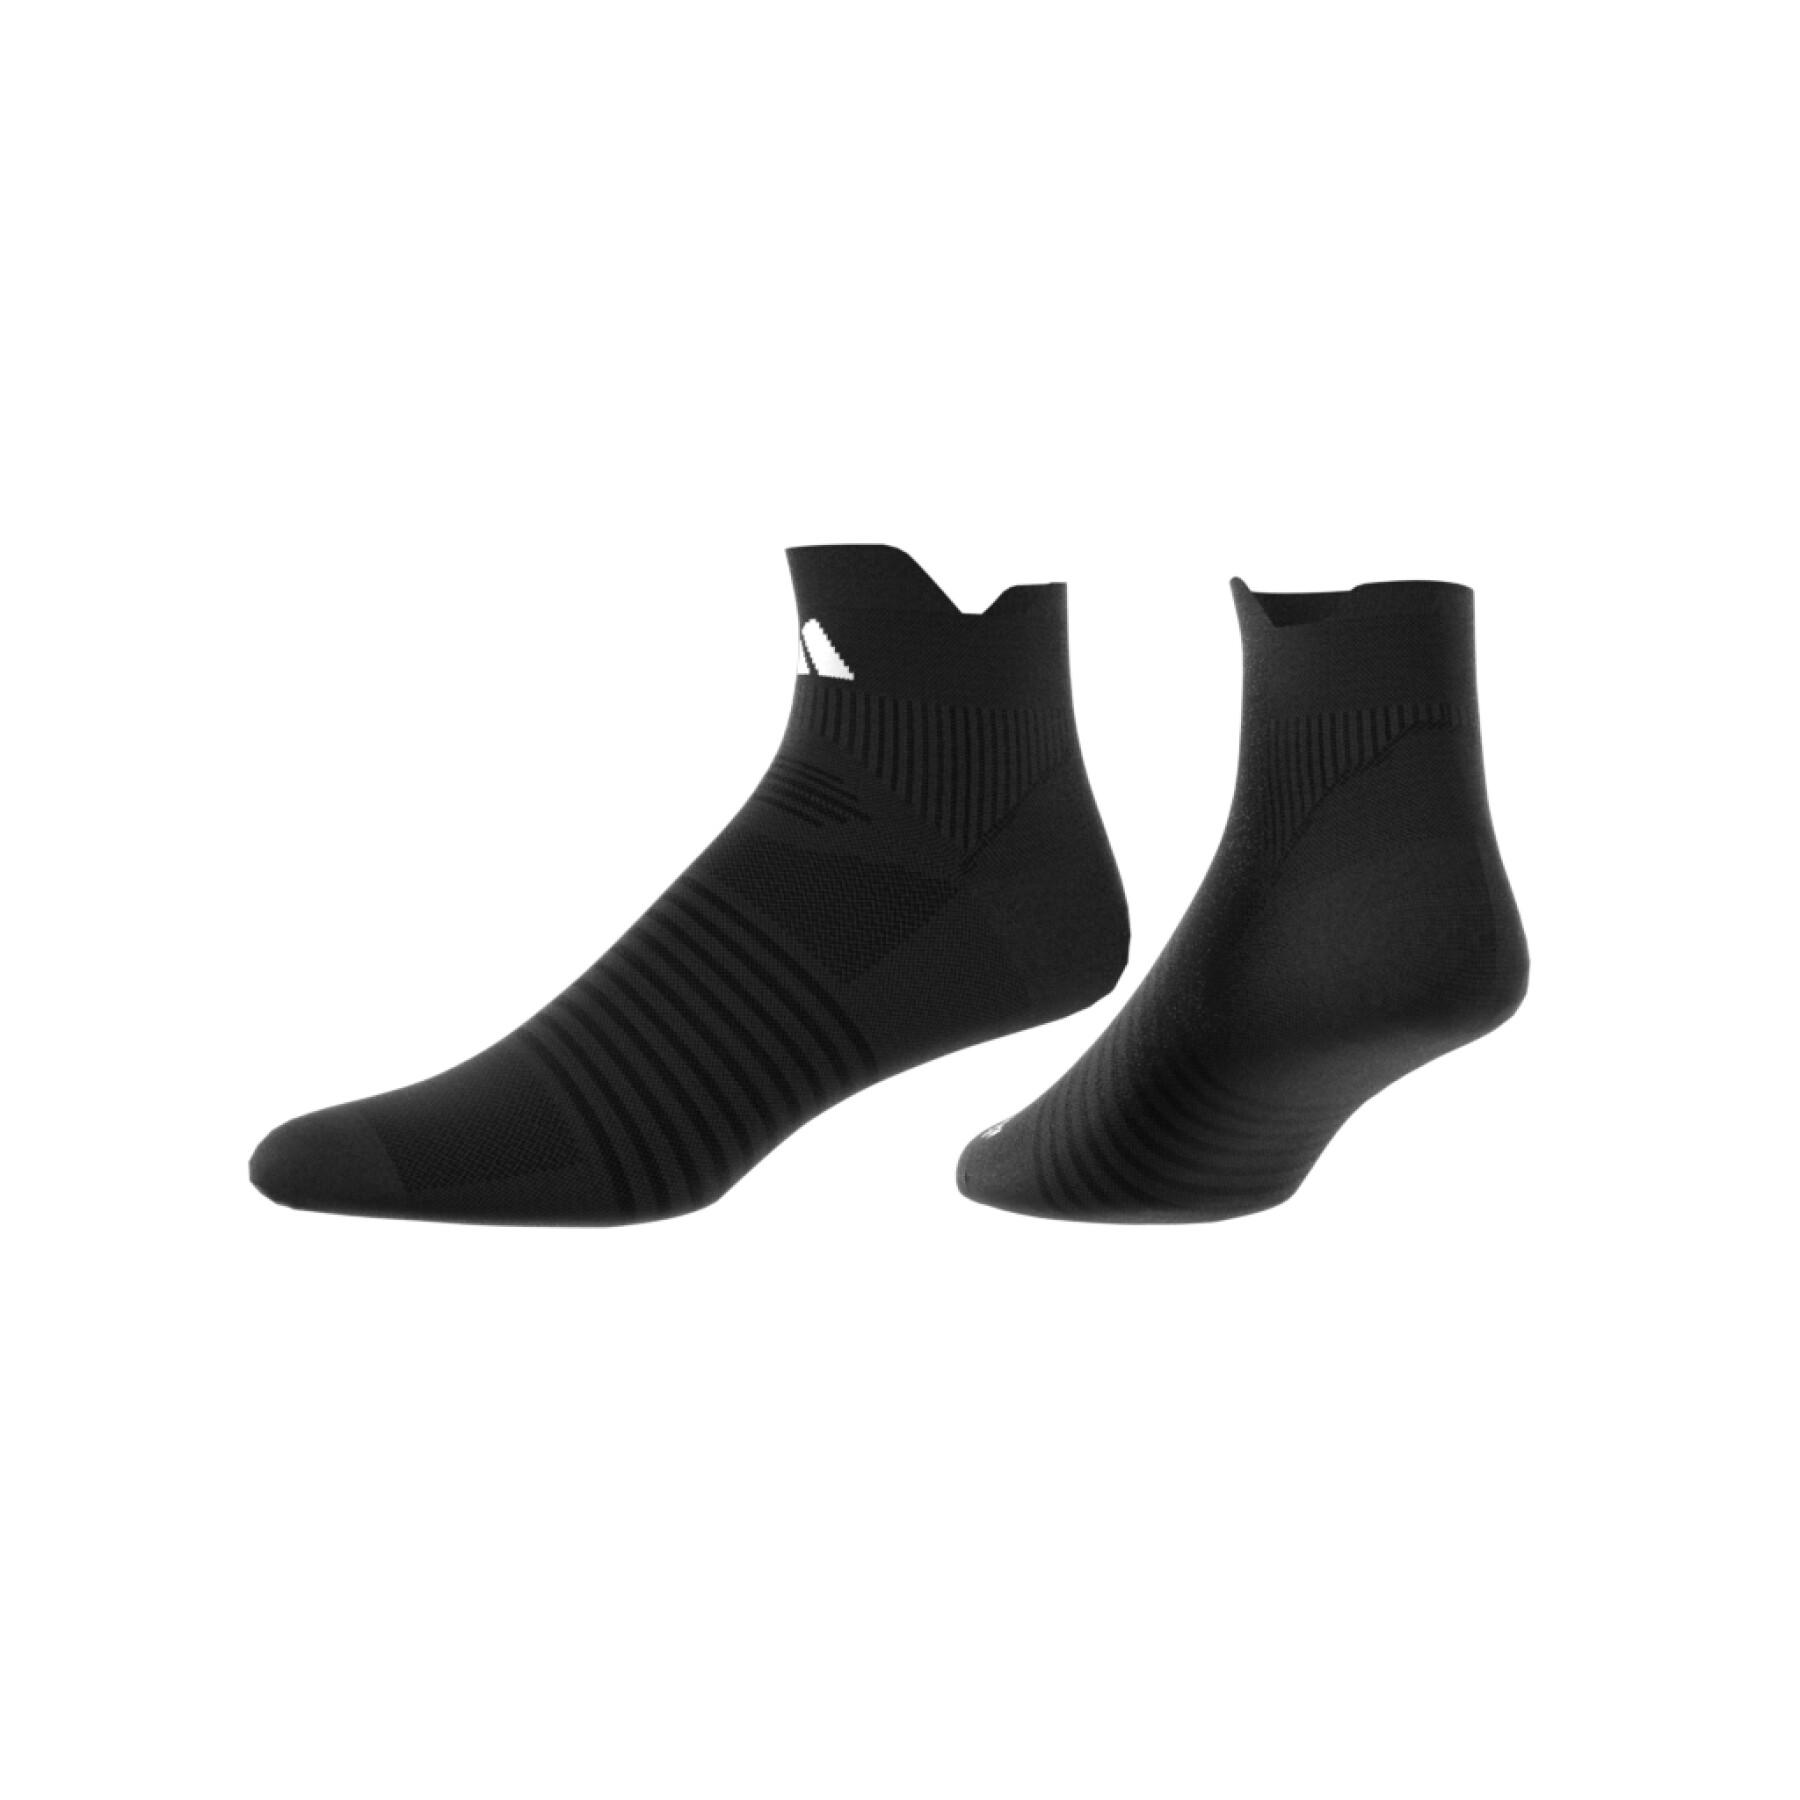 Socken hoch adidas Performance Designed for Sport